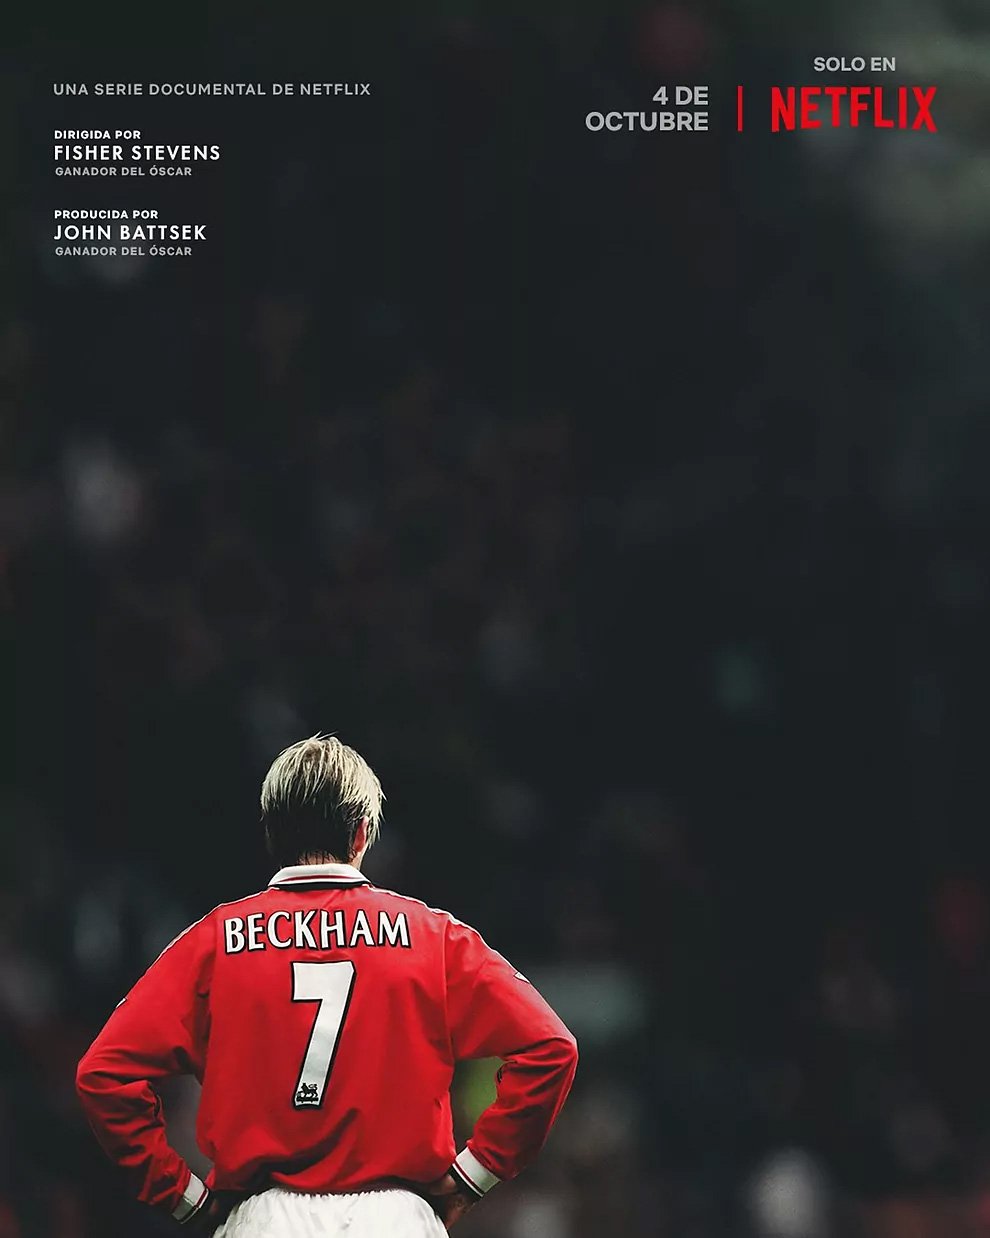 Serie phim tài liệu "Beckham" về cuộc đời của David Beckham gồm 4 tập vừa được phát hành.